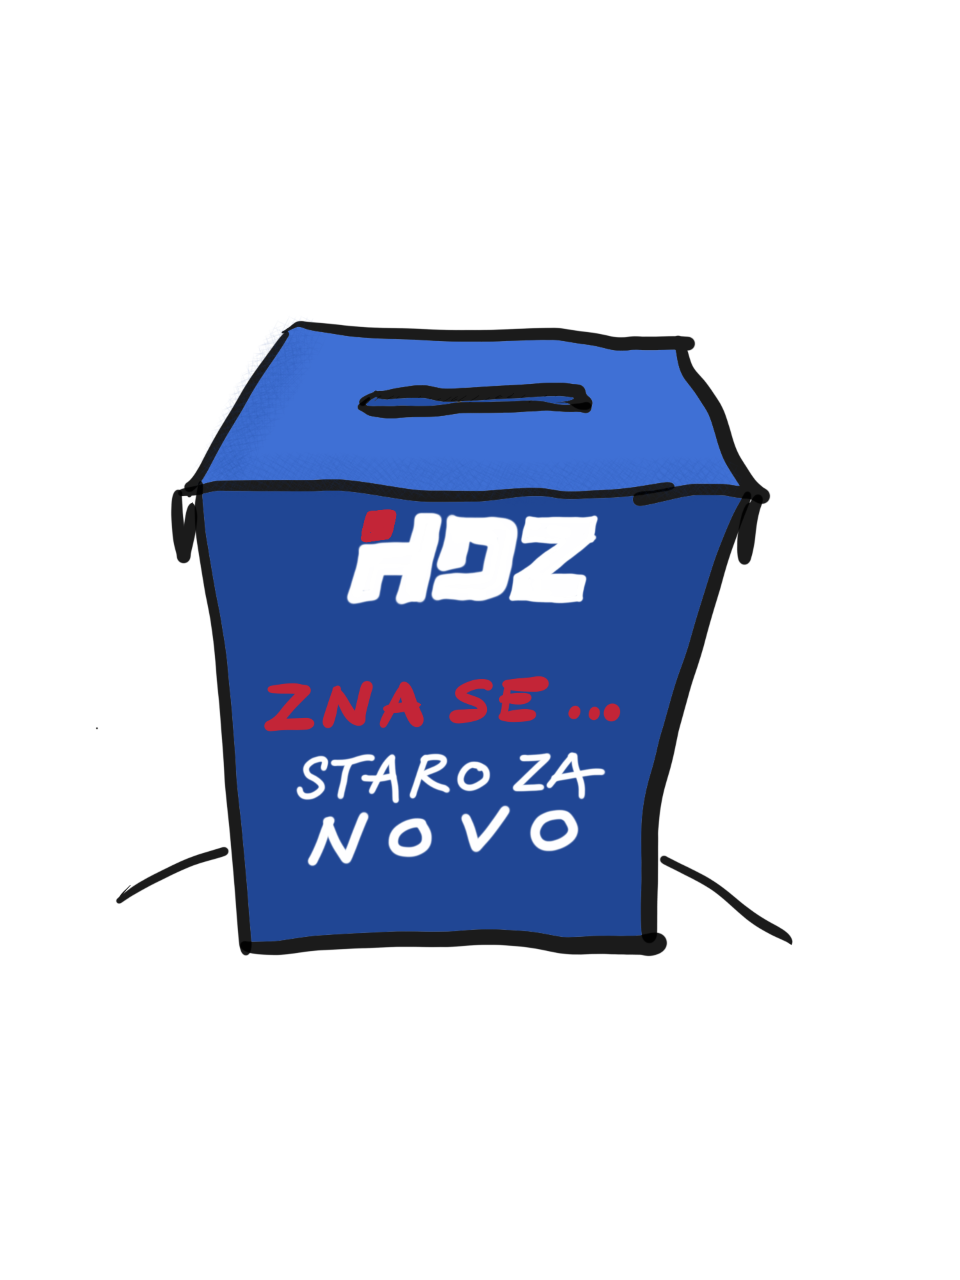 Dok Slovenija bira promjene, Hrvatsku postojano ubija HDZ-ova verzija političke stabilnosti